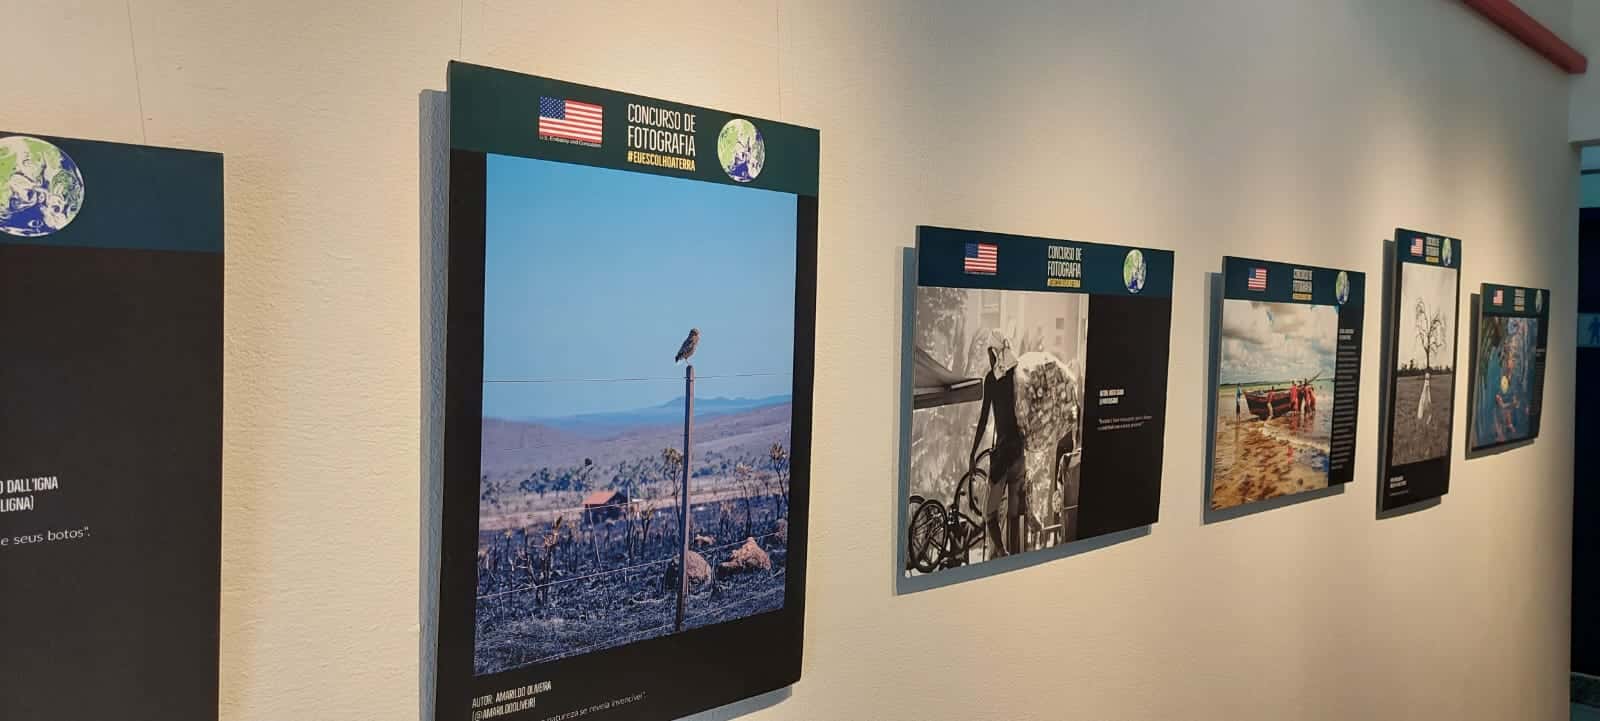 Embaixada dos EUA promove exposição fotográfica em São Carlos